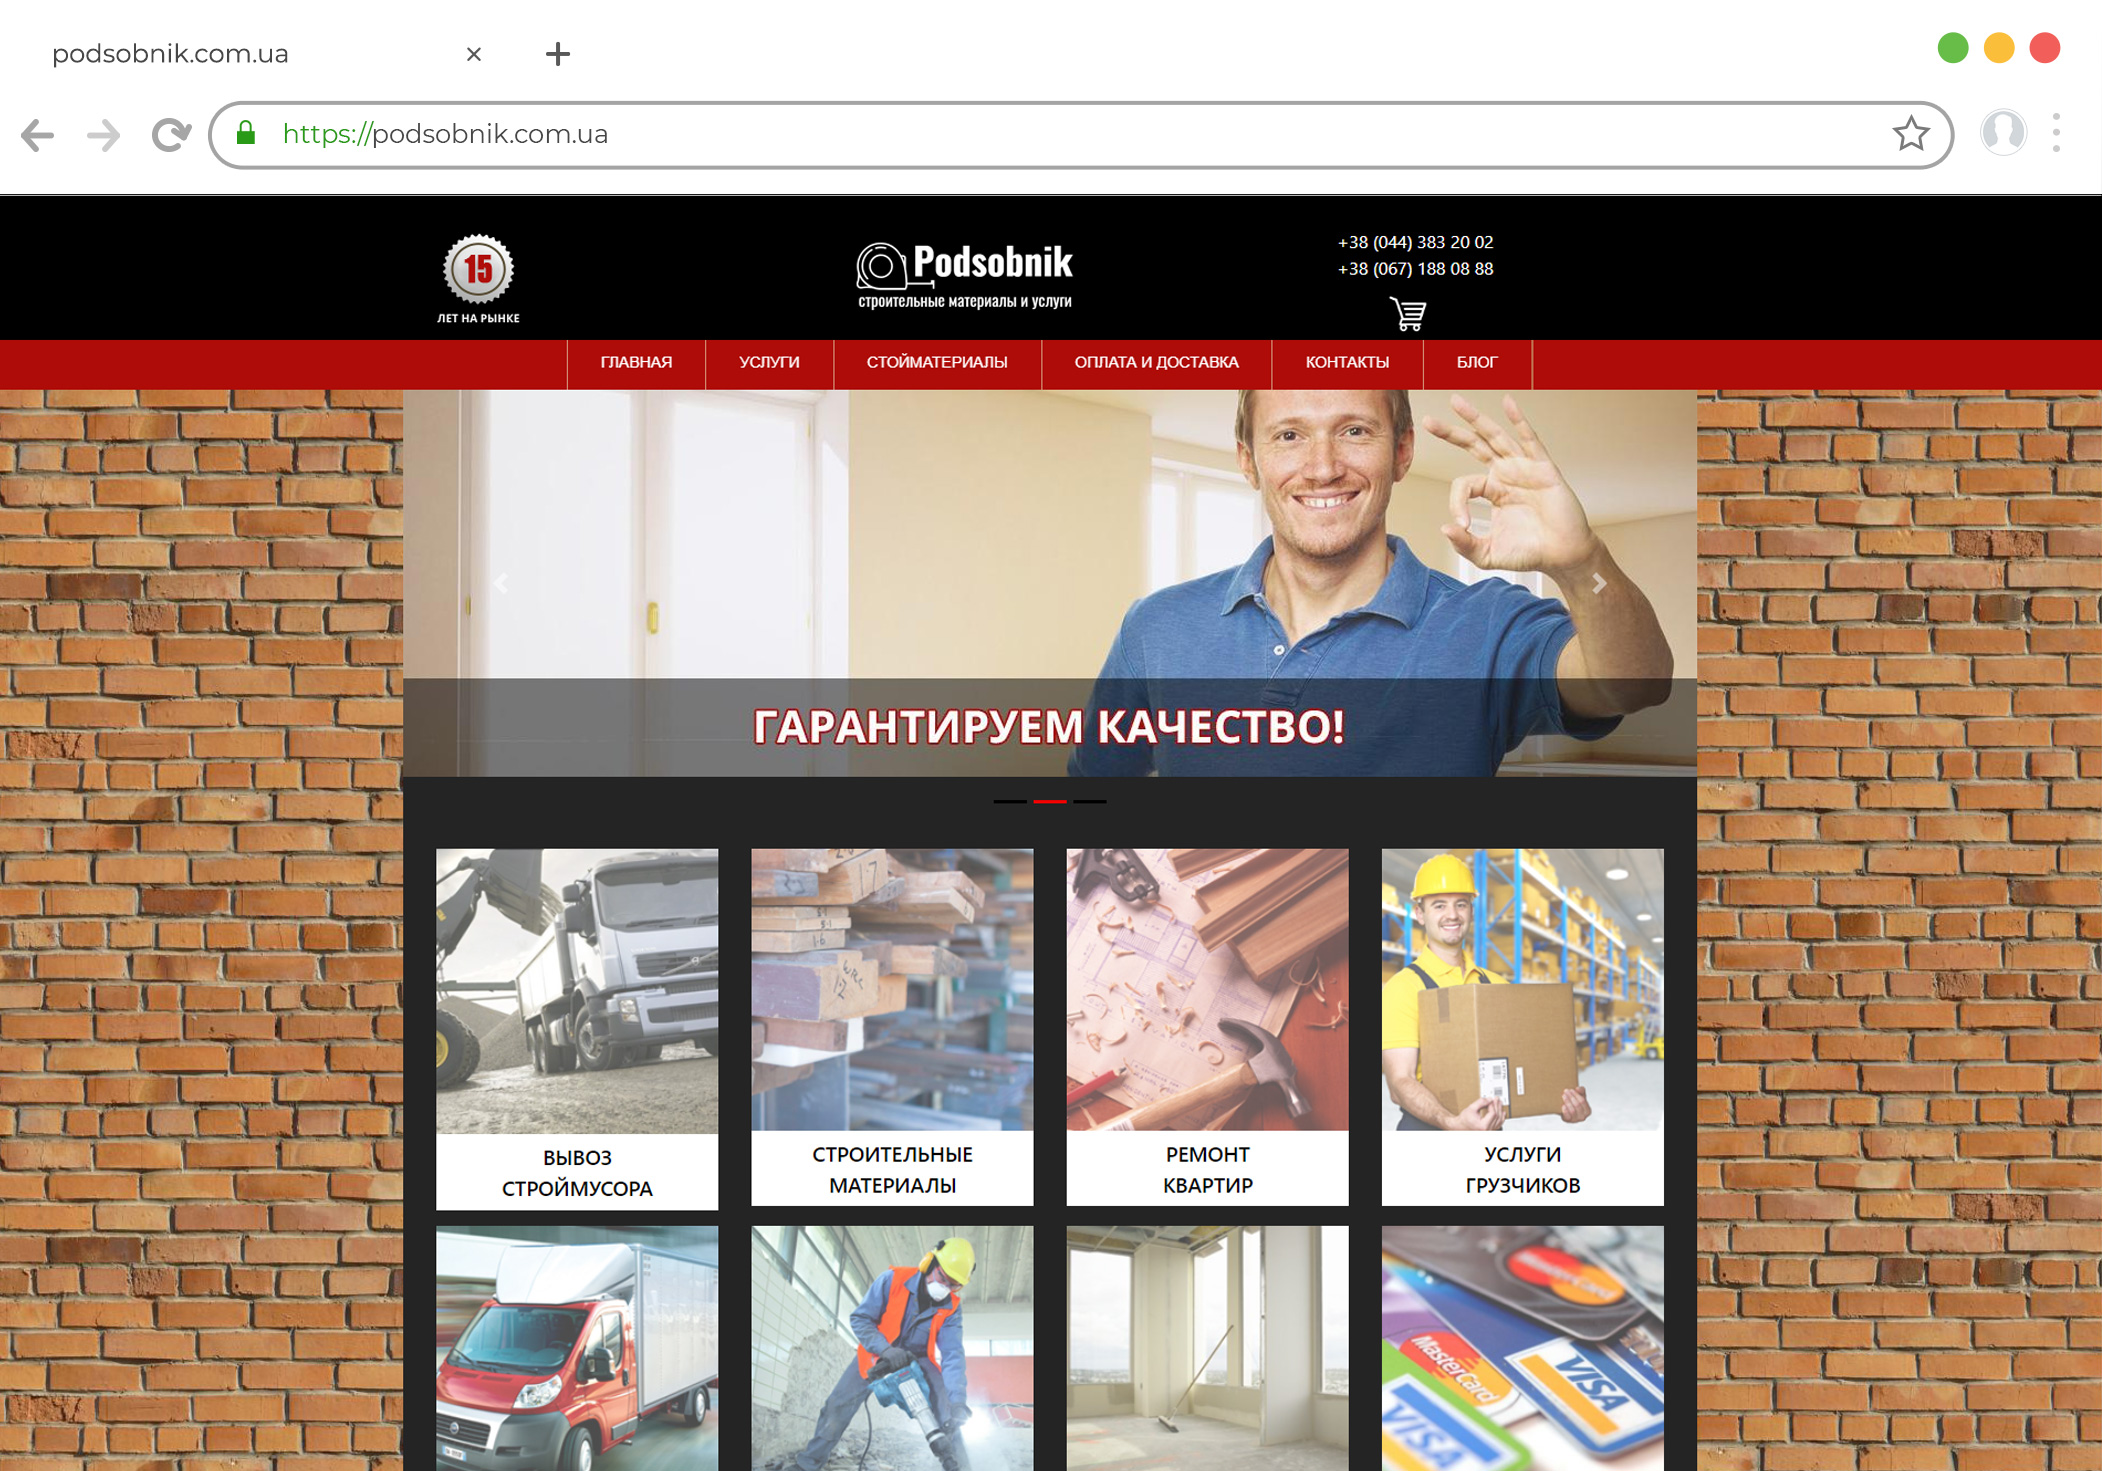 Доработка сайта на Drupal по ремонту квартир podsobnik.com.ua